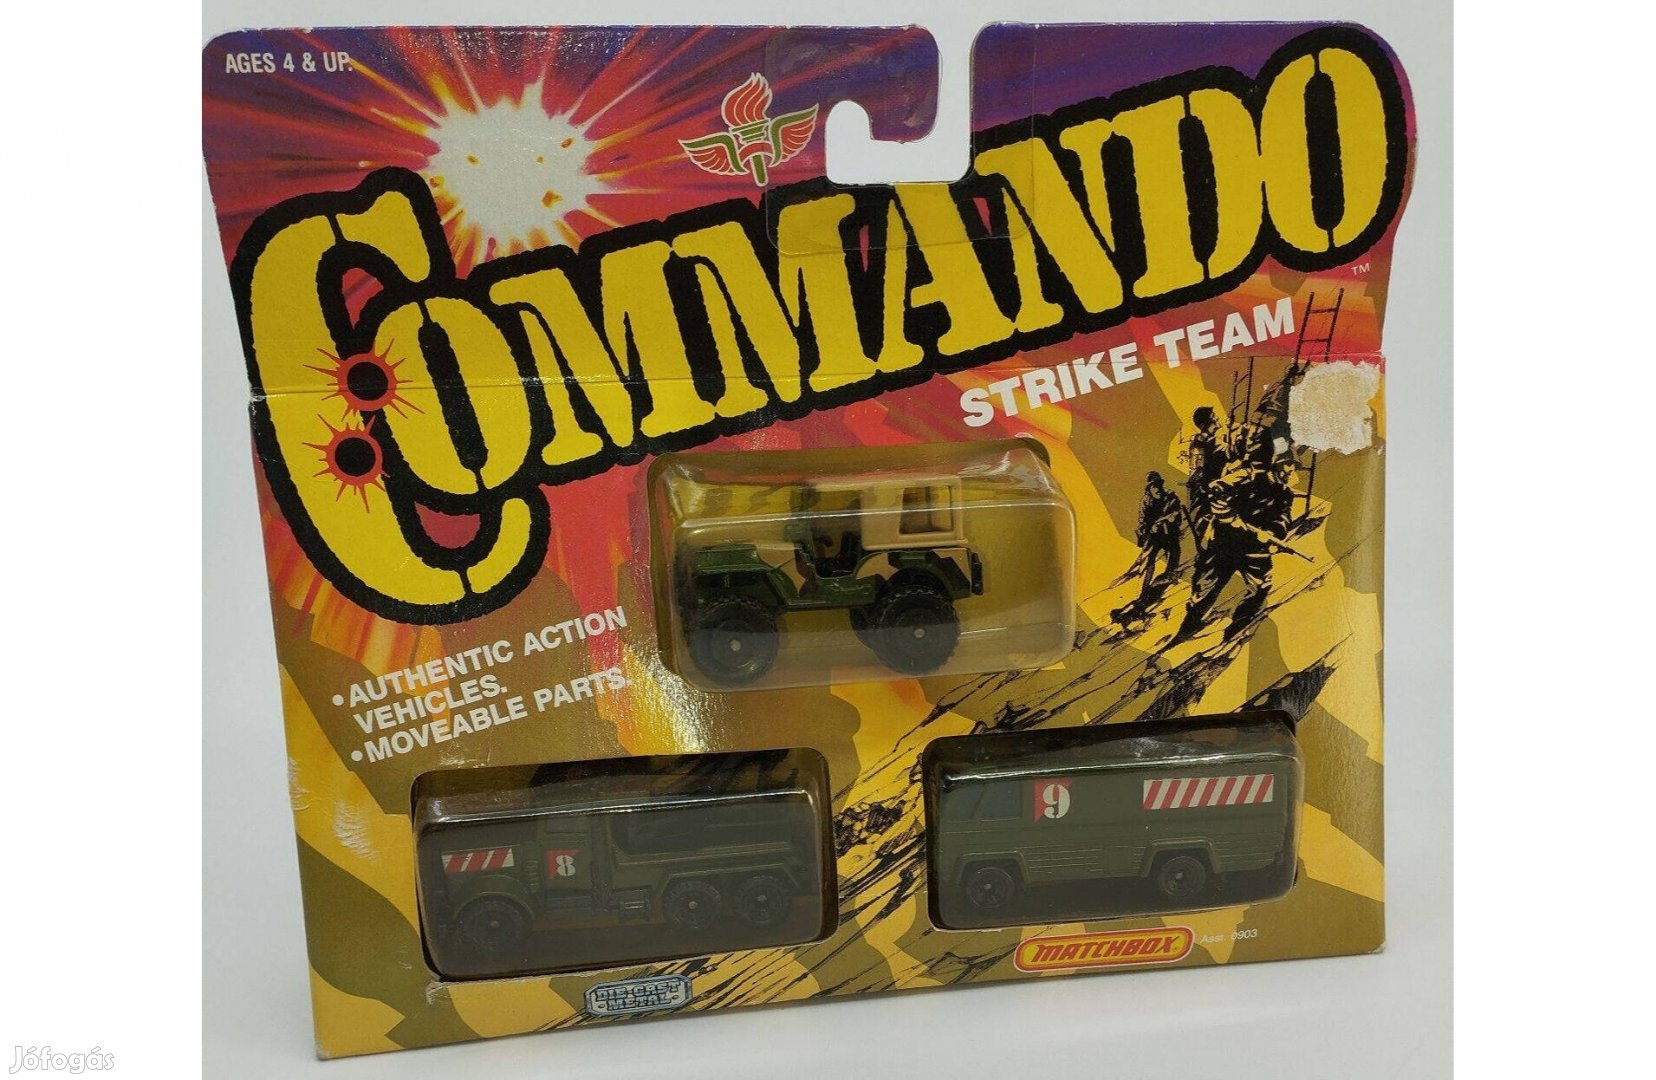 Matchbox Commando Strike Team